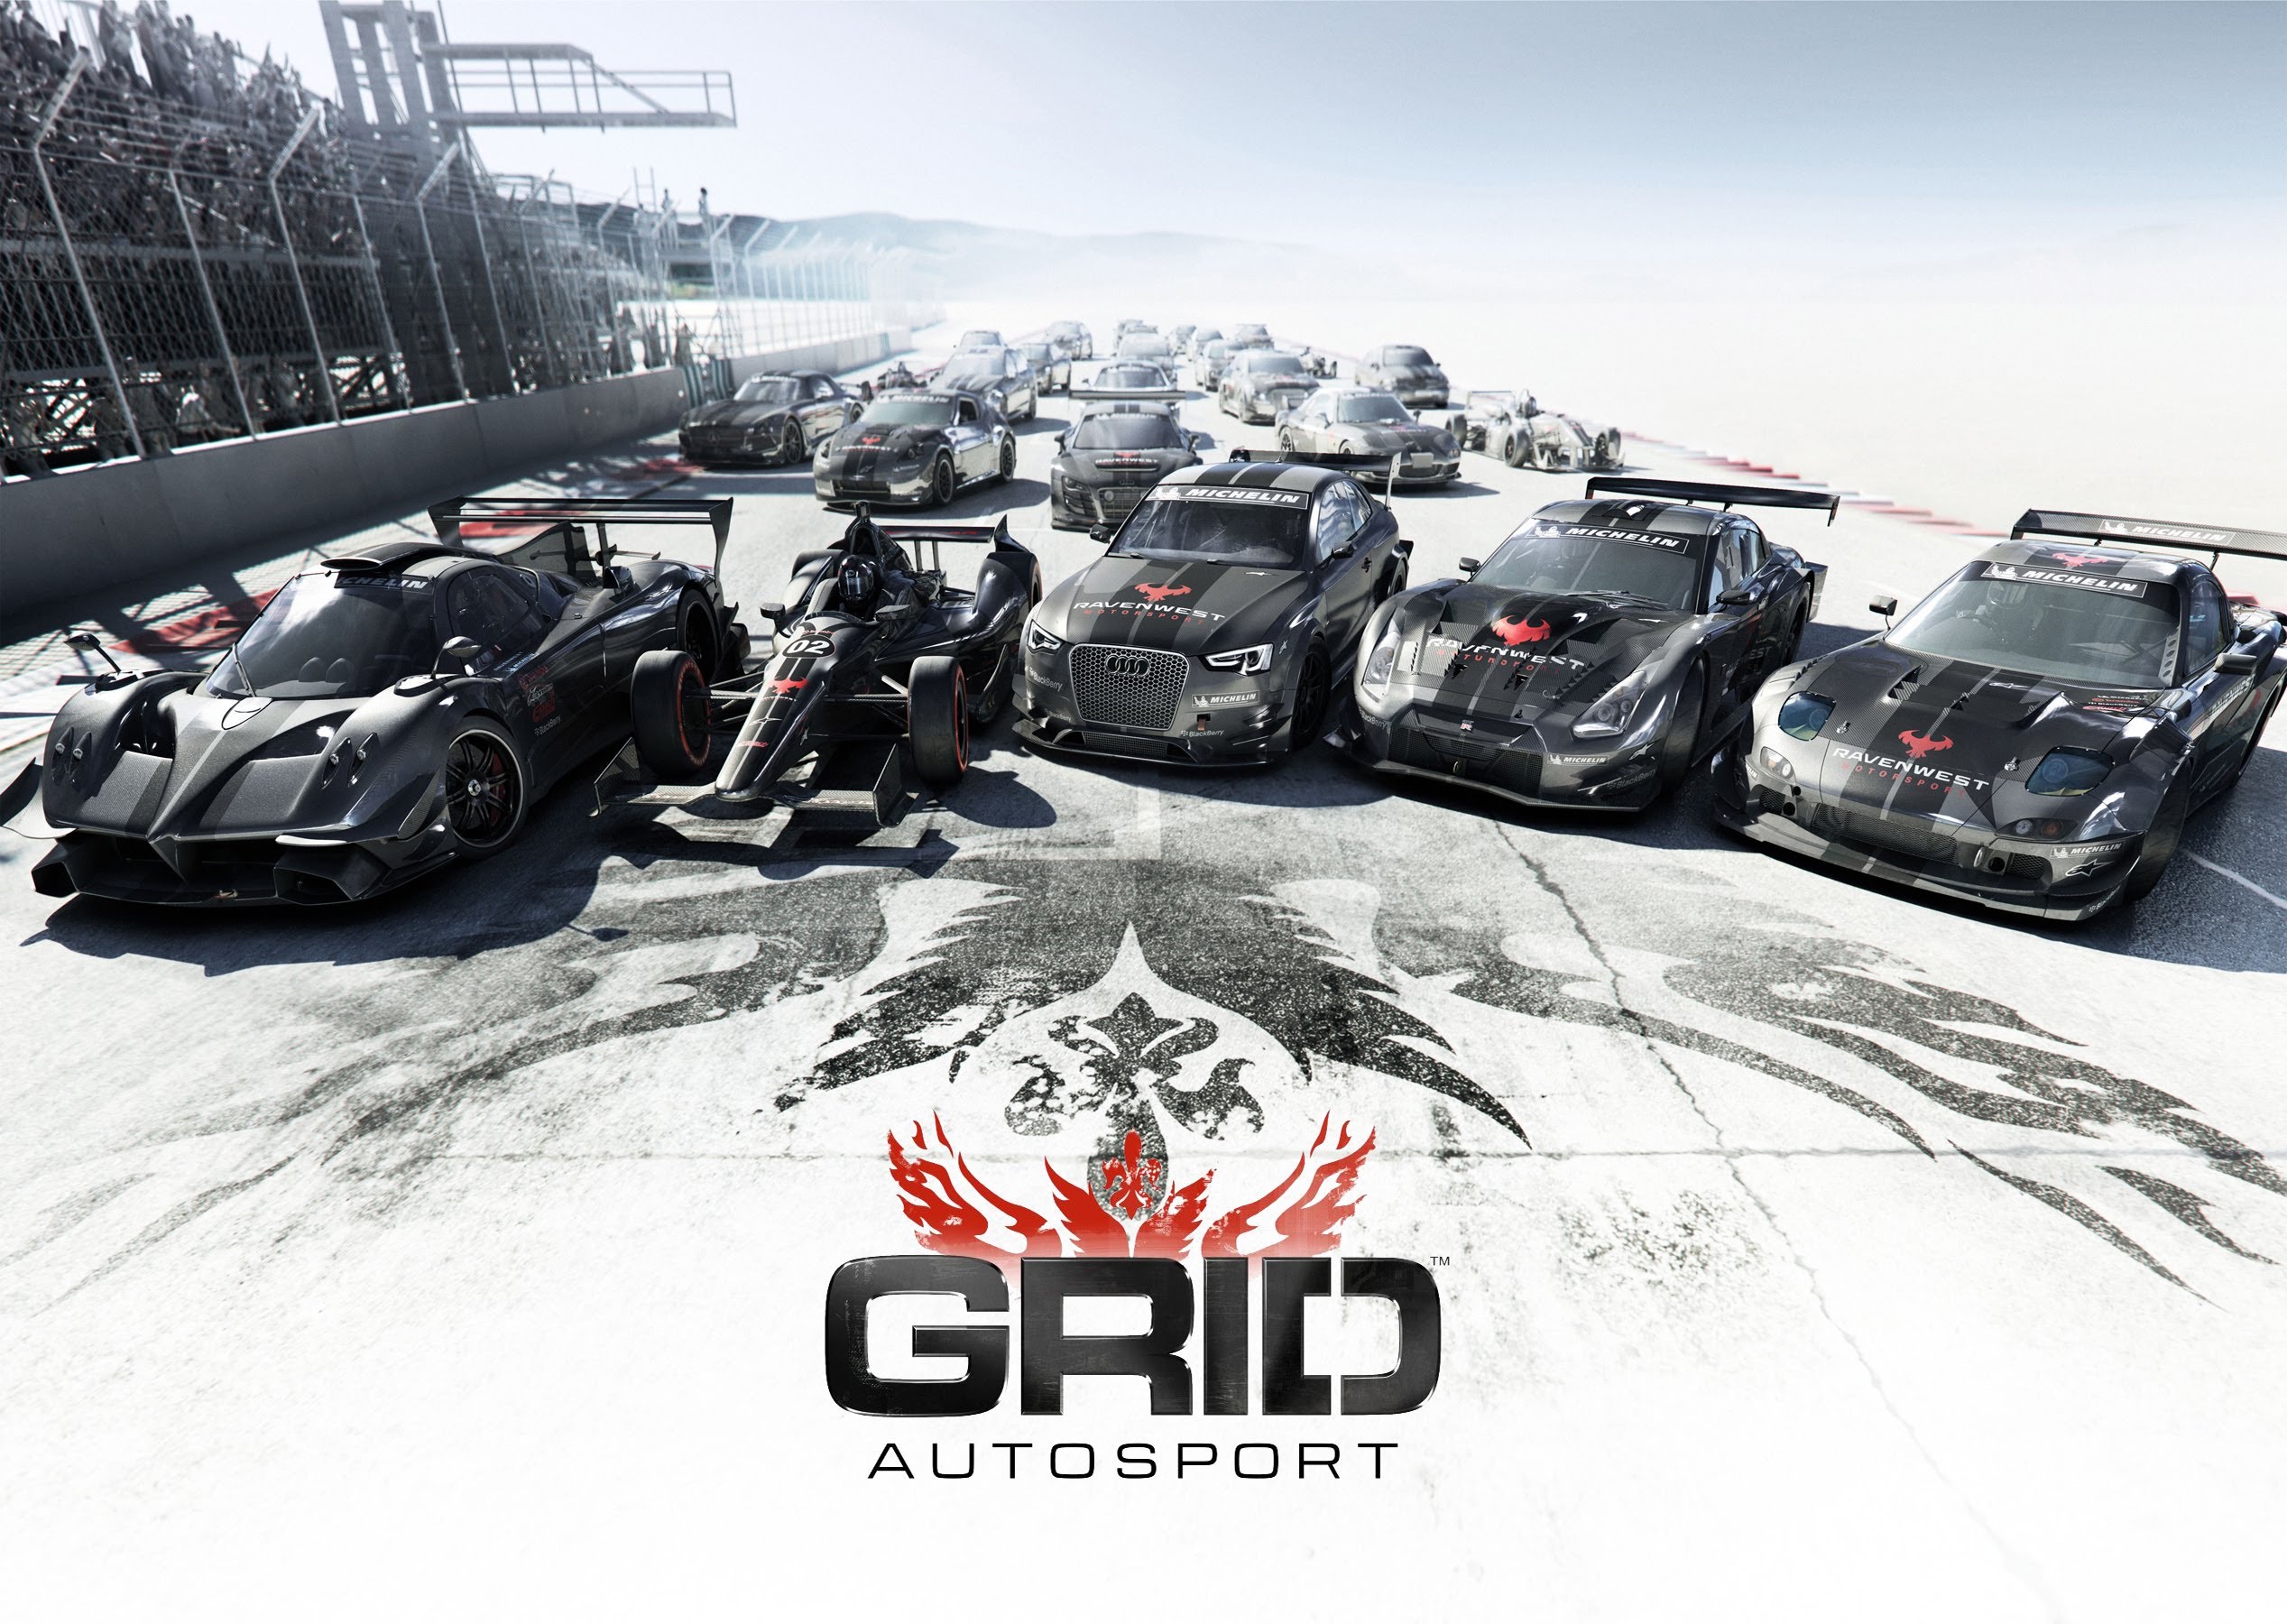 720p grid autosport